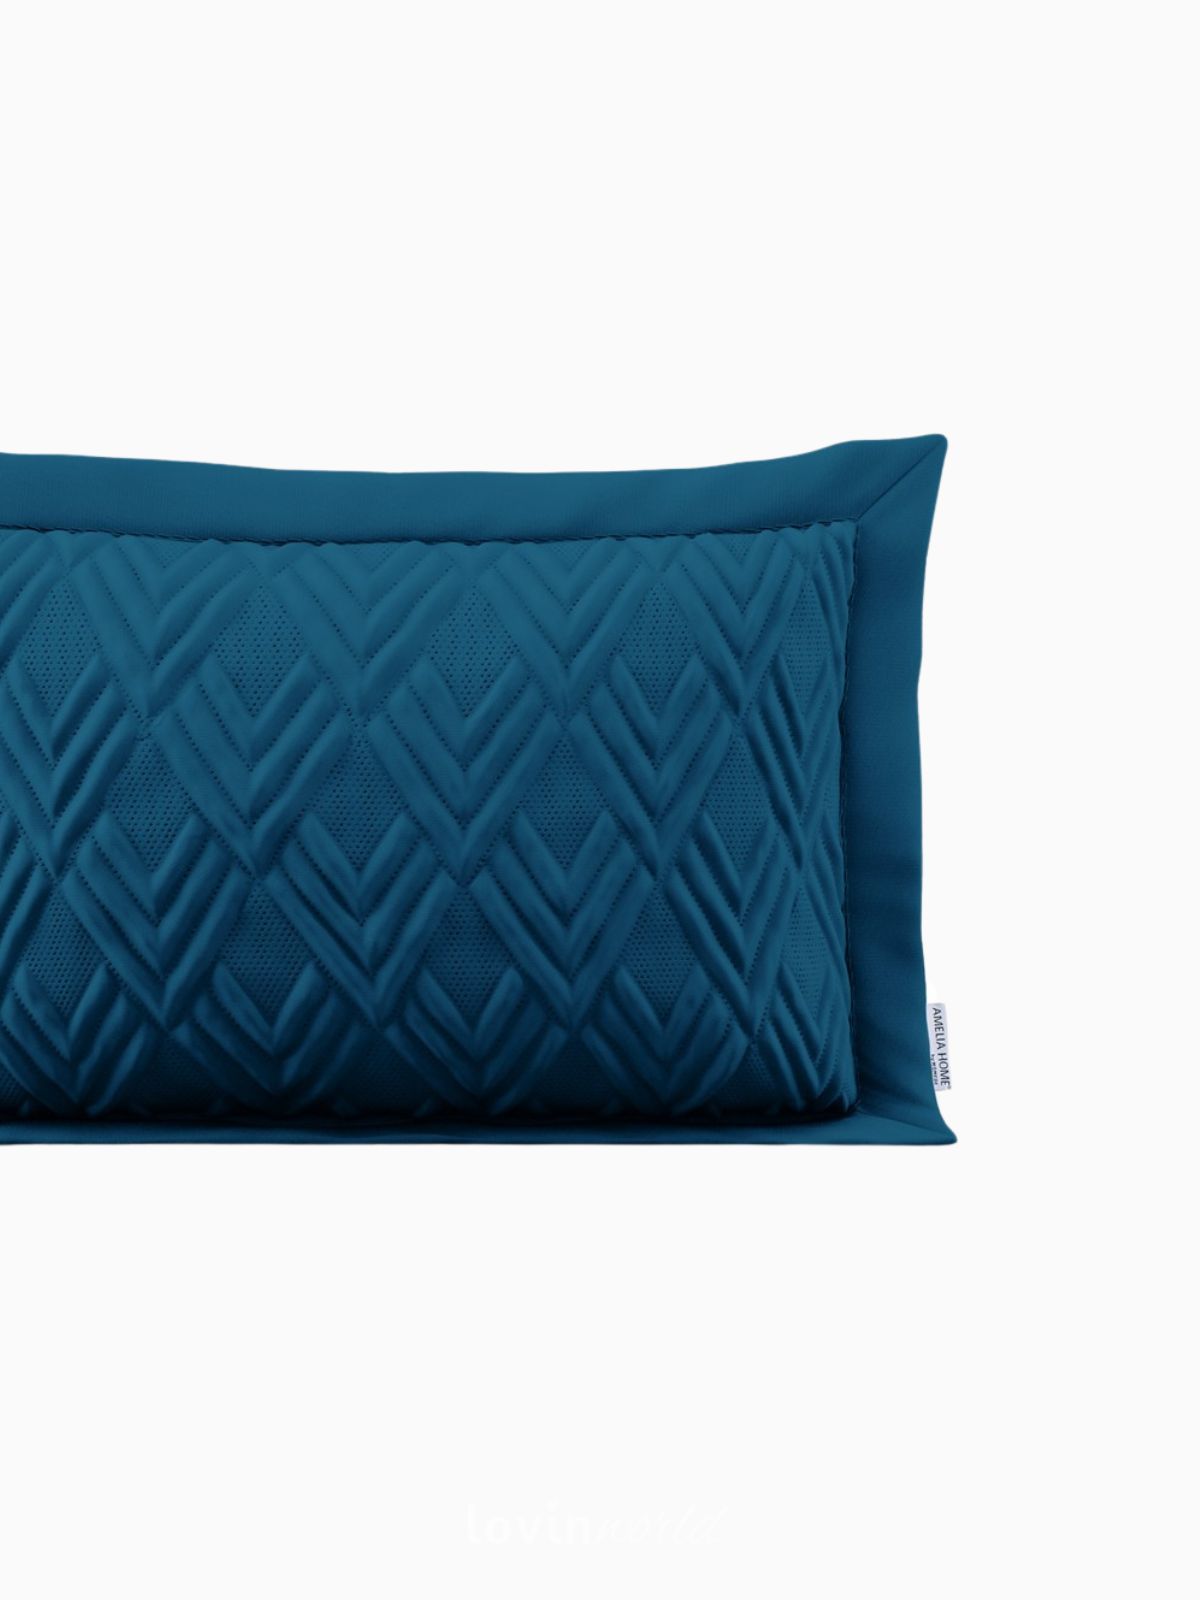 Cuscino decorativo Ophelia in colore blu 50x70 cm.-6